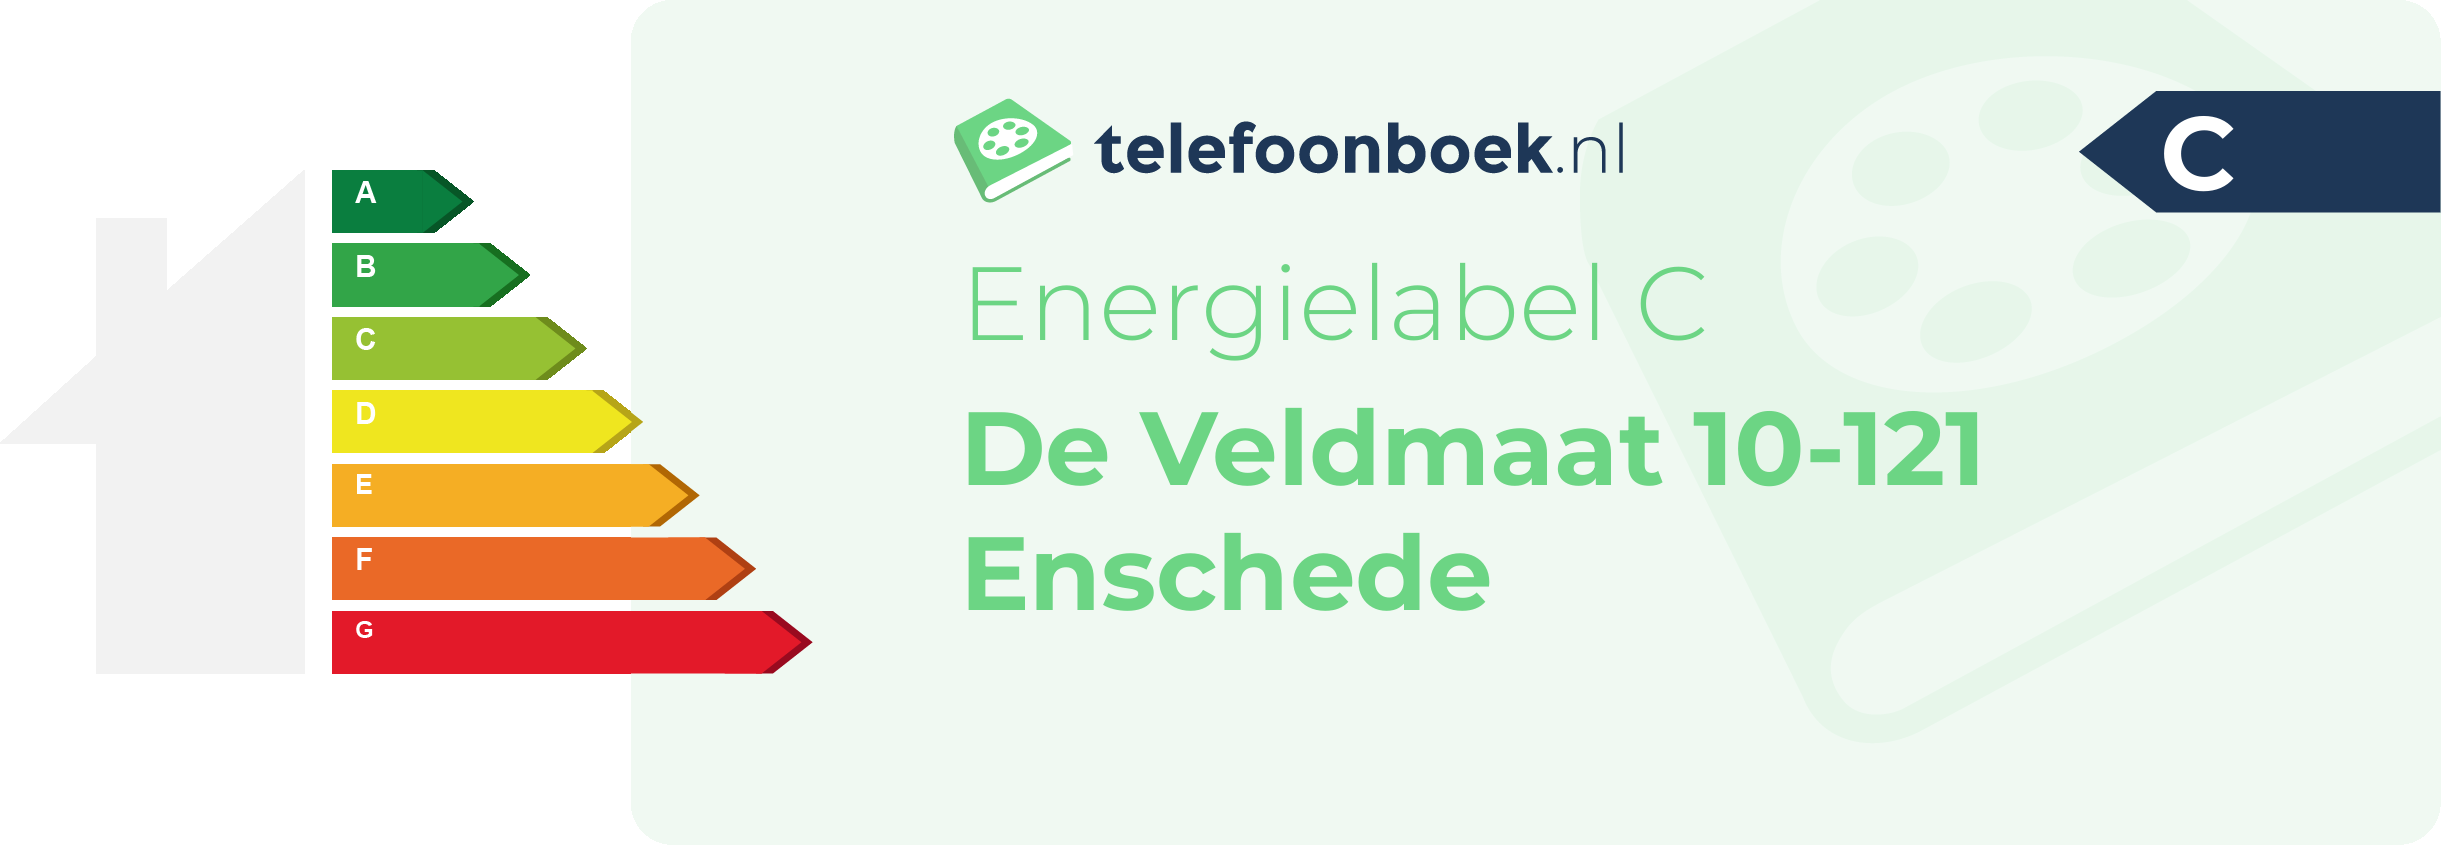 Energielabel De Veldmaat 10-121 Enschede